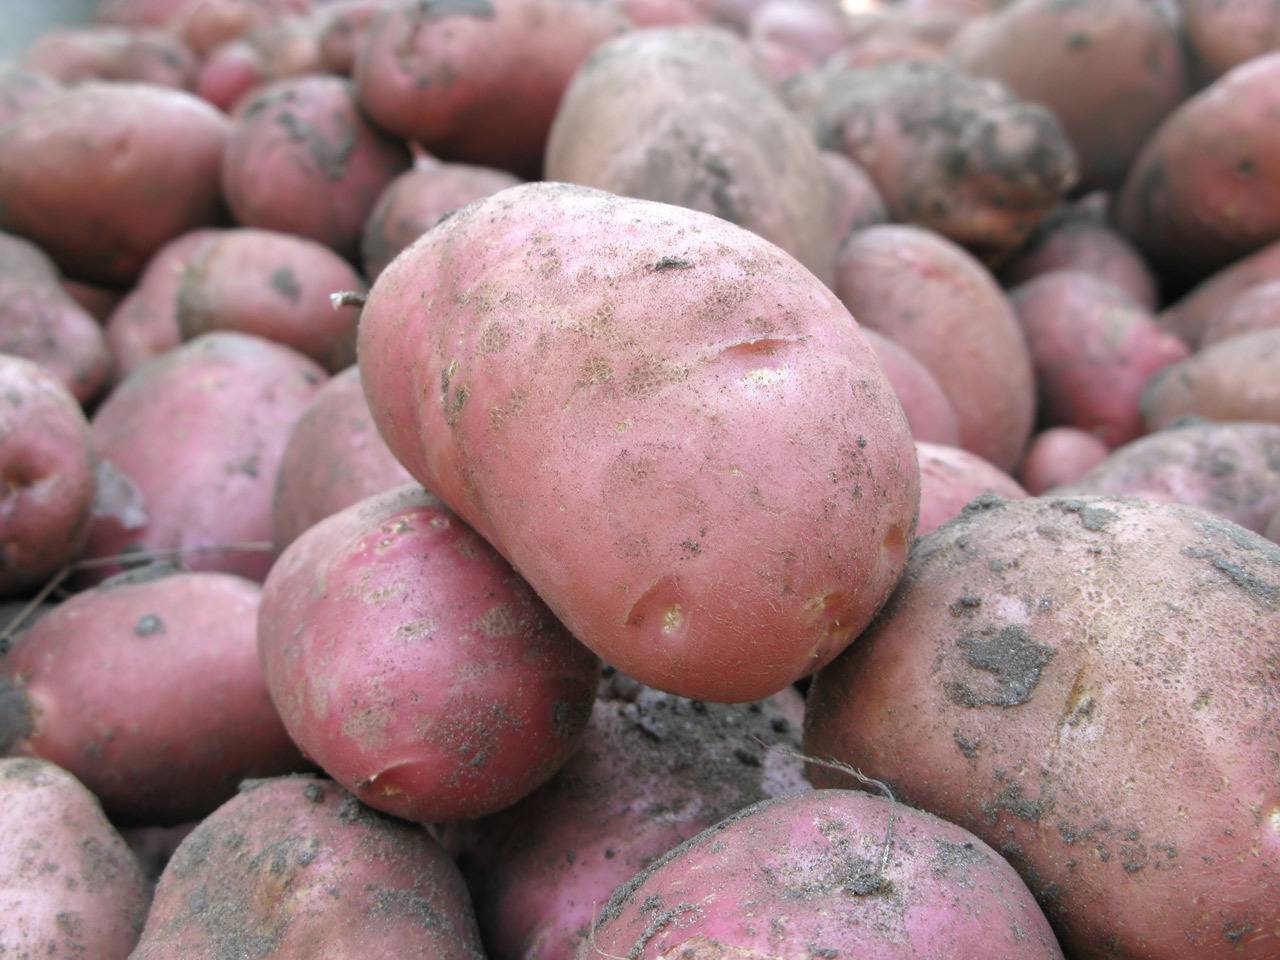 Картофель хозяюшка: описание сорта, фото, отзывы о вкусовых качествах и сроках созревания, особенности хранения и выращивания, характеристика урожайности